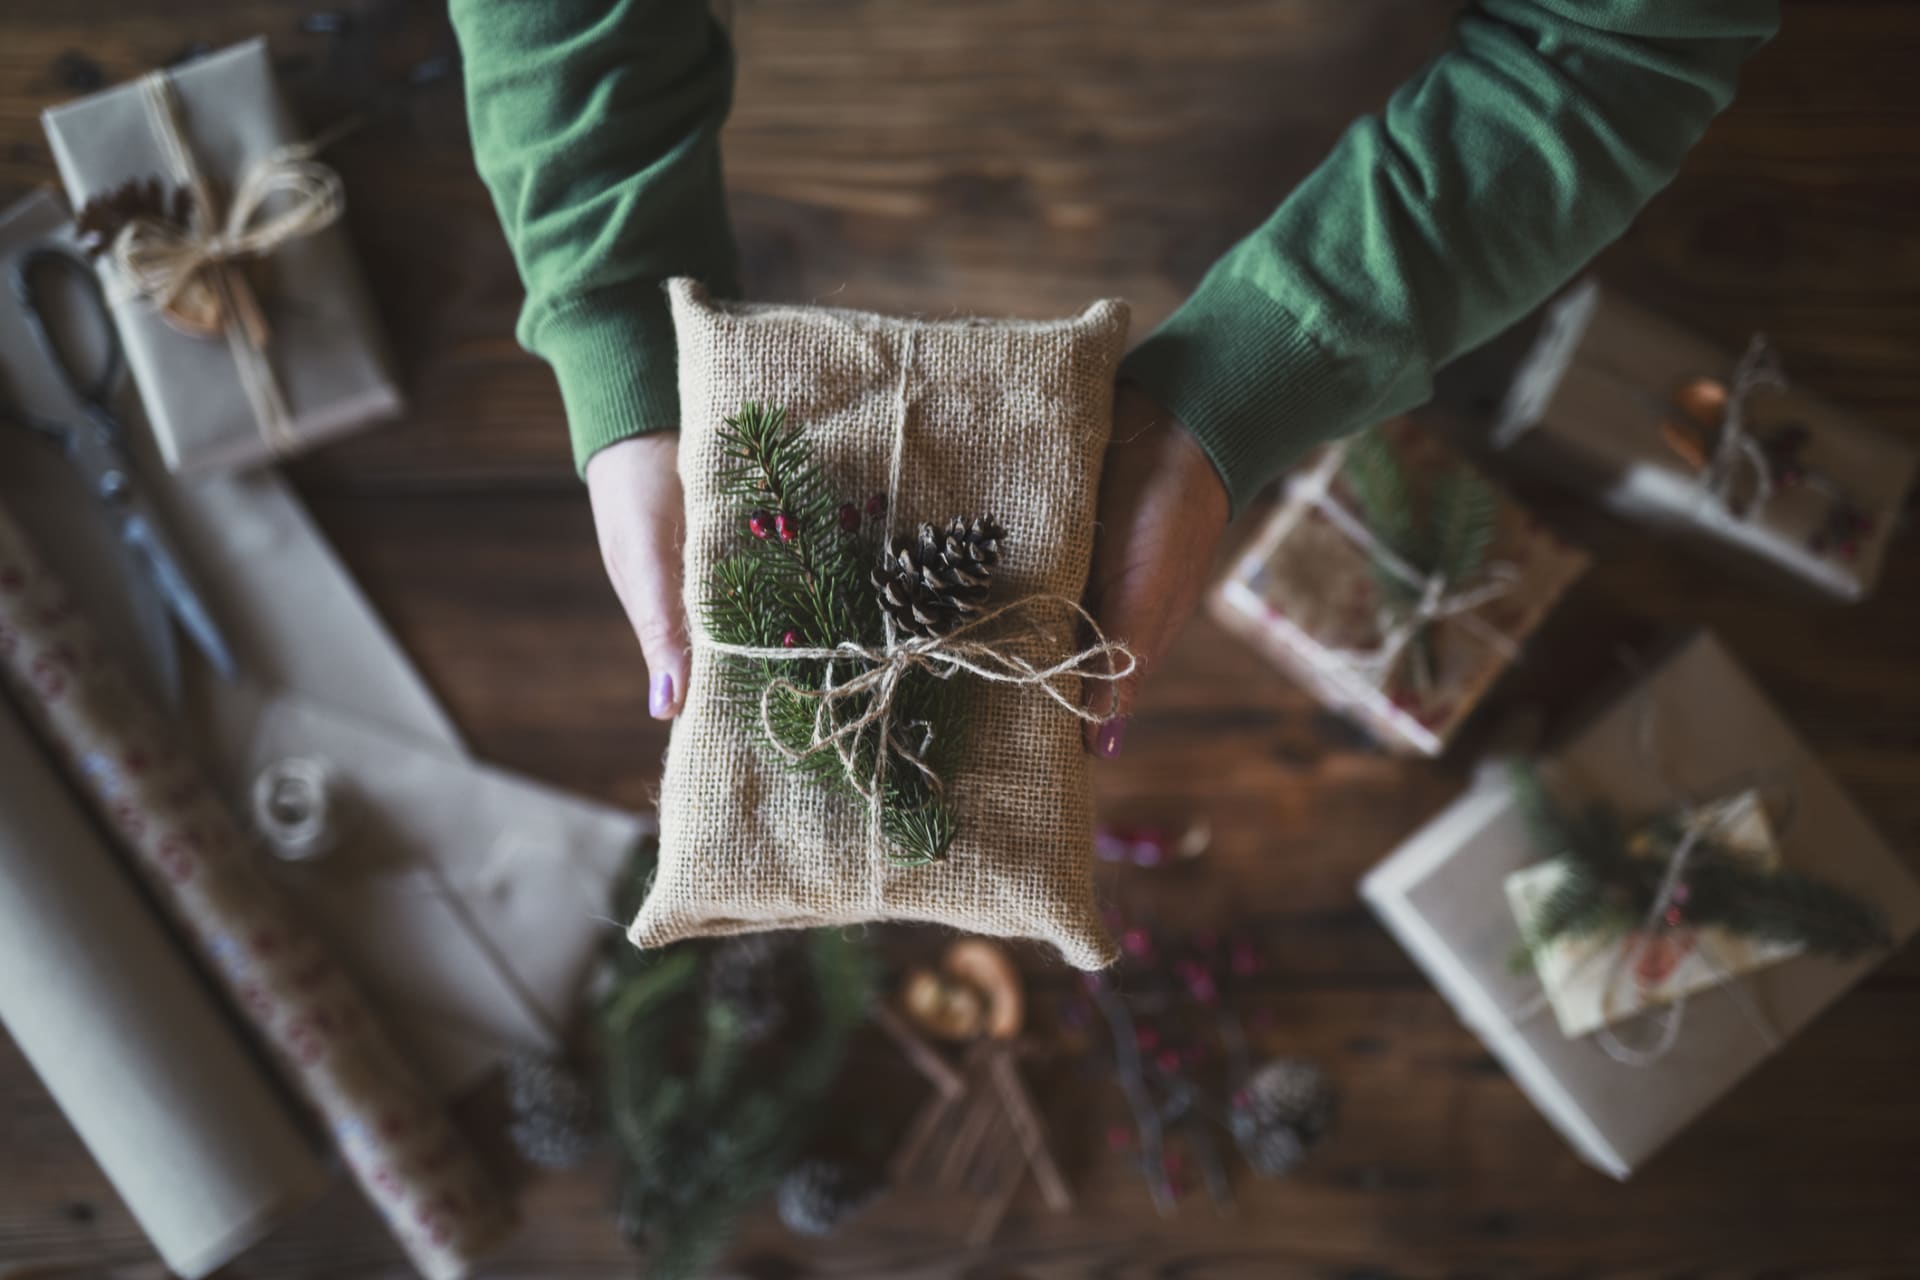 Vánoce v přírodním stylu oslavte i udržitelným balením dárků. Co třeba opakovaně využitelné textilní sáčky nebo papírové krabice